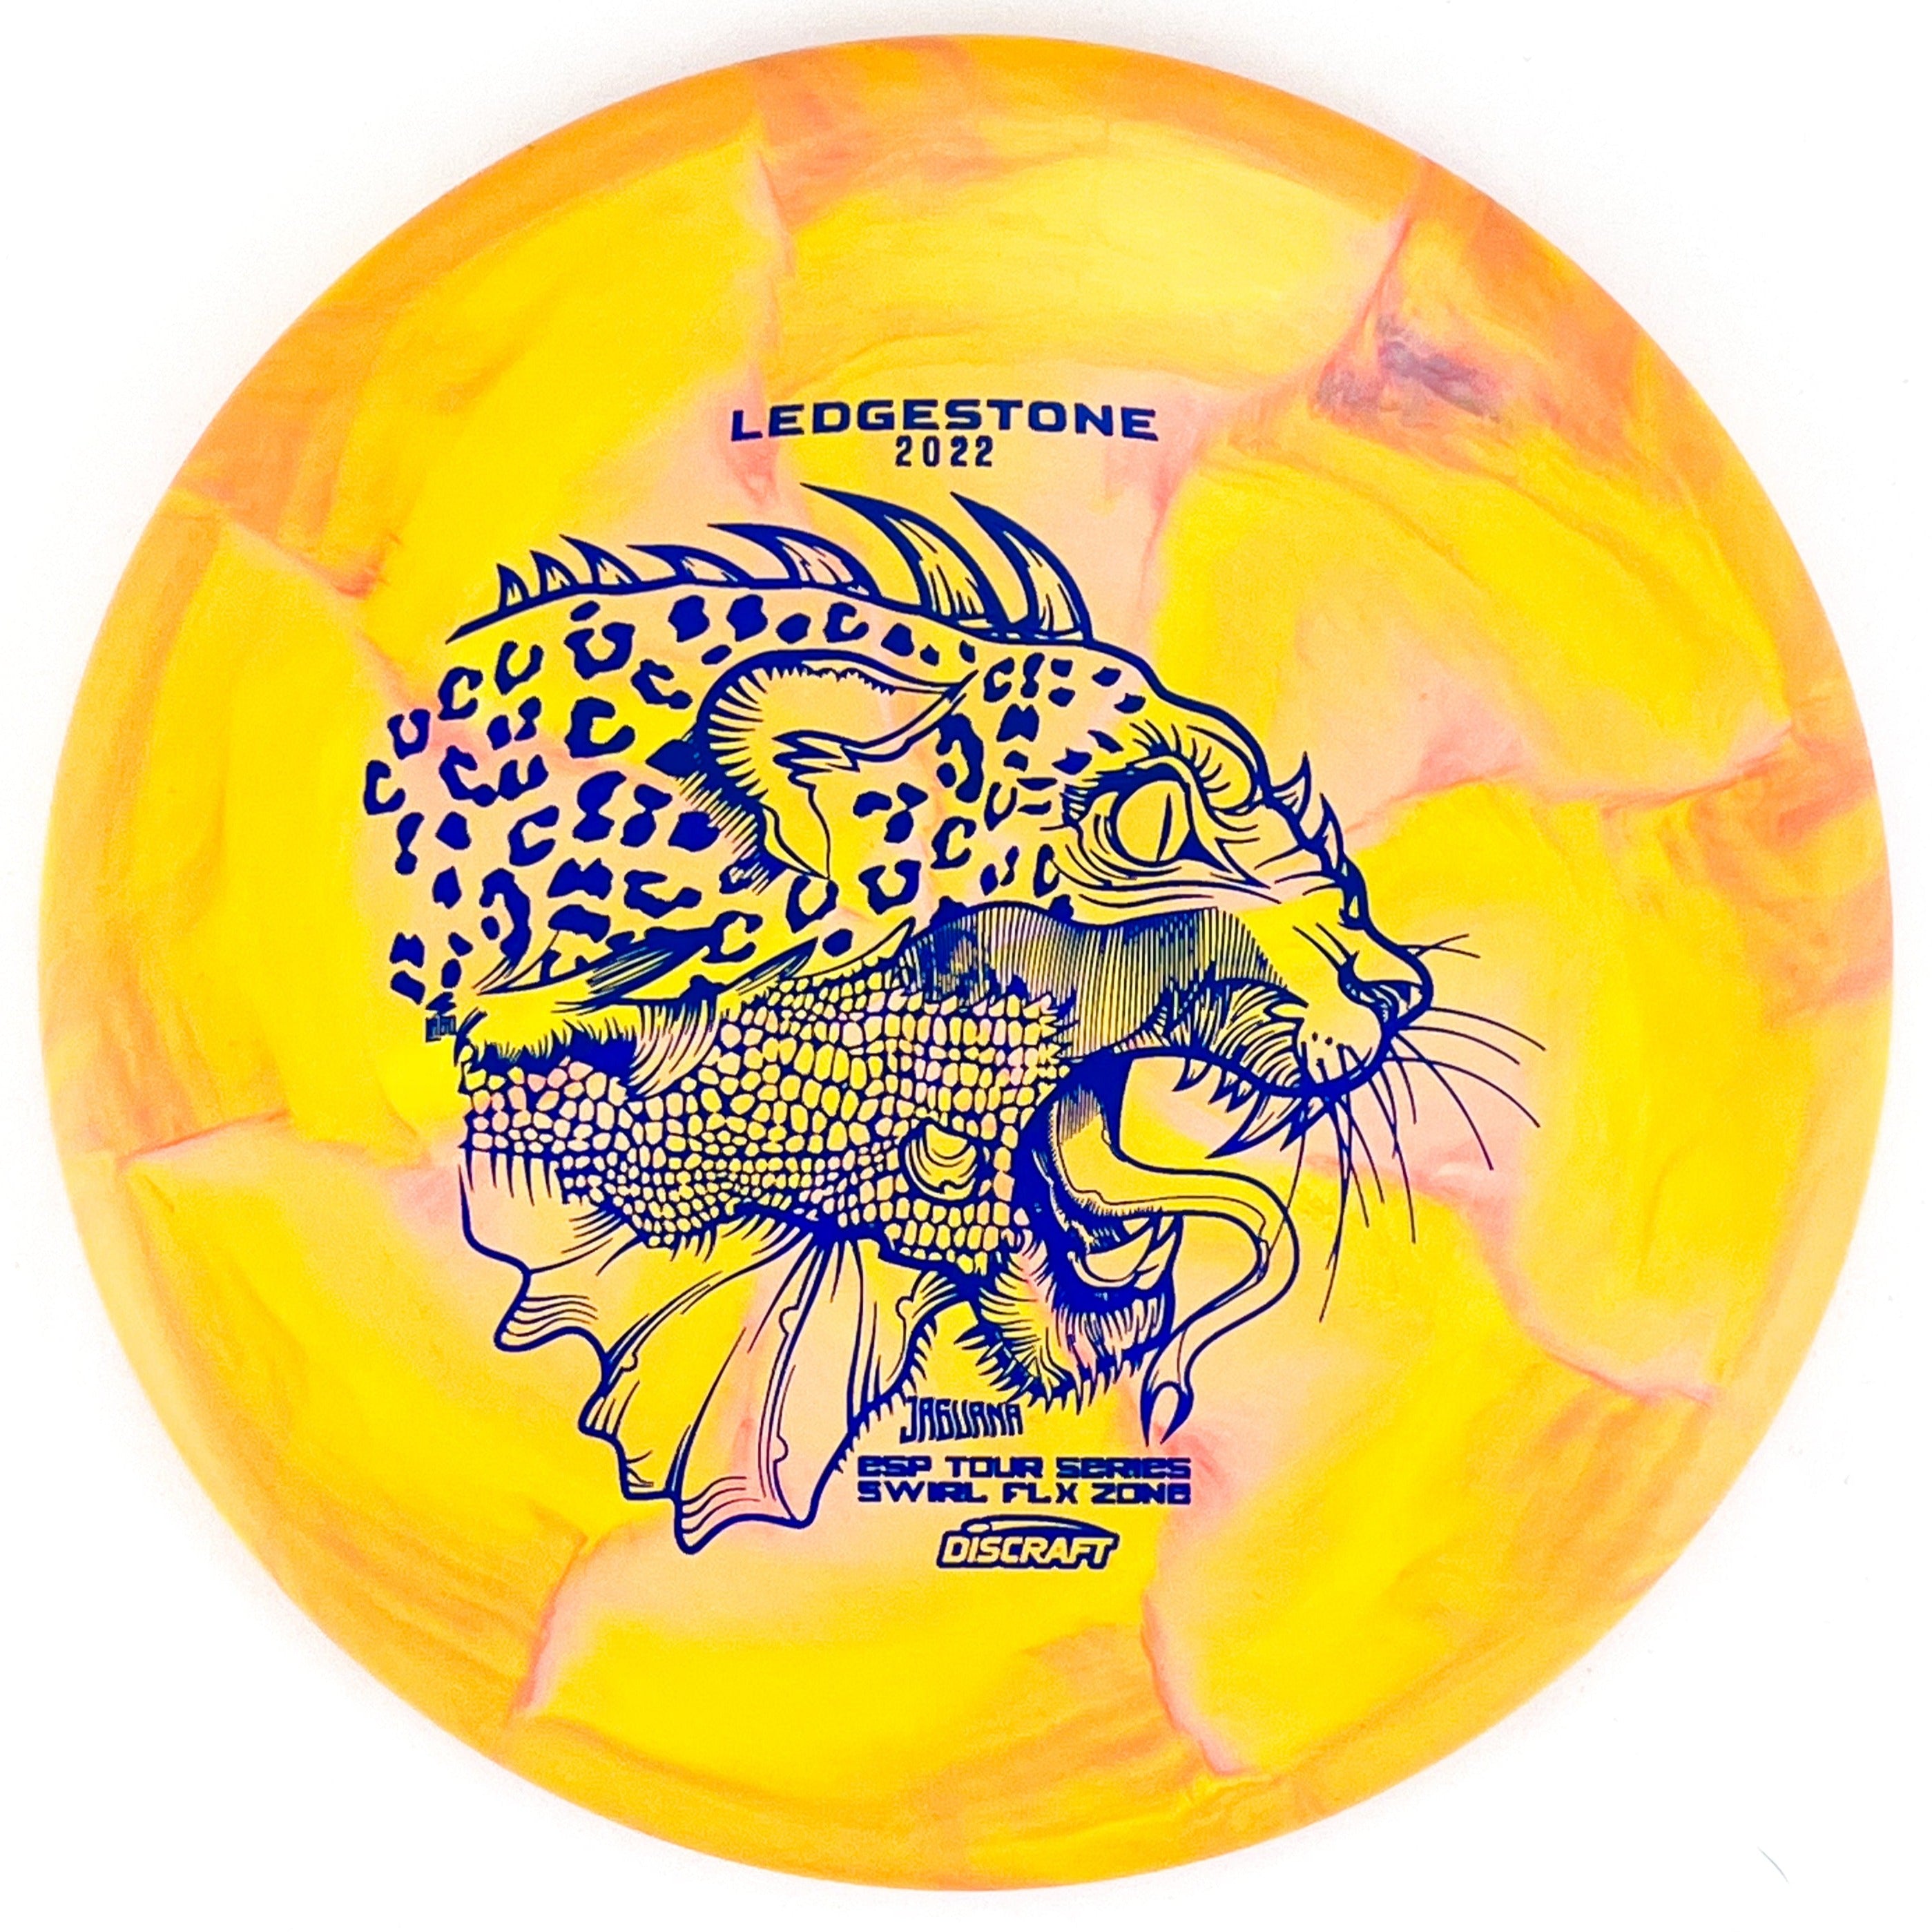 Yellow 2022 Ledgestone Tour Series ESP Swirl Flx Jaguana Zone disc golf putt and approach disc from Discraft Disc Golf.